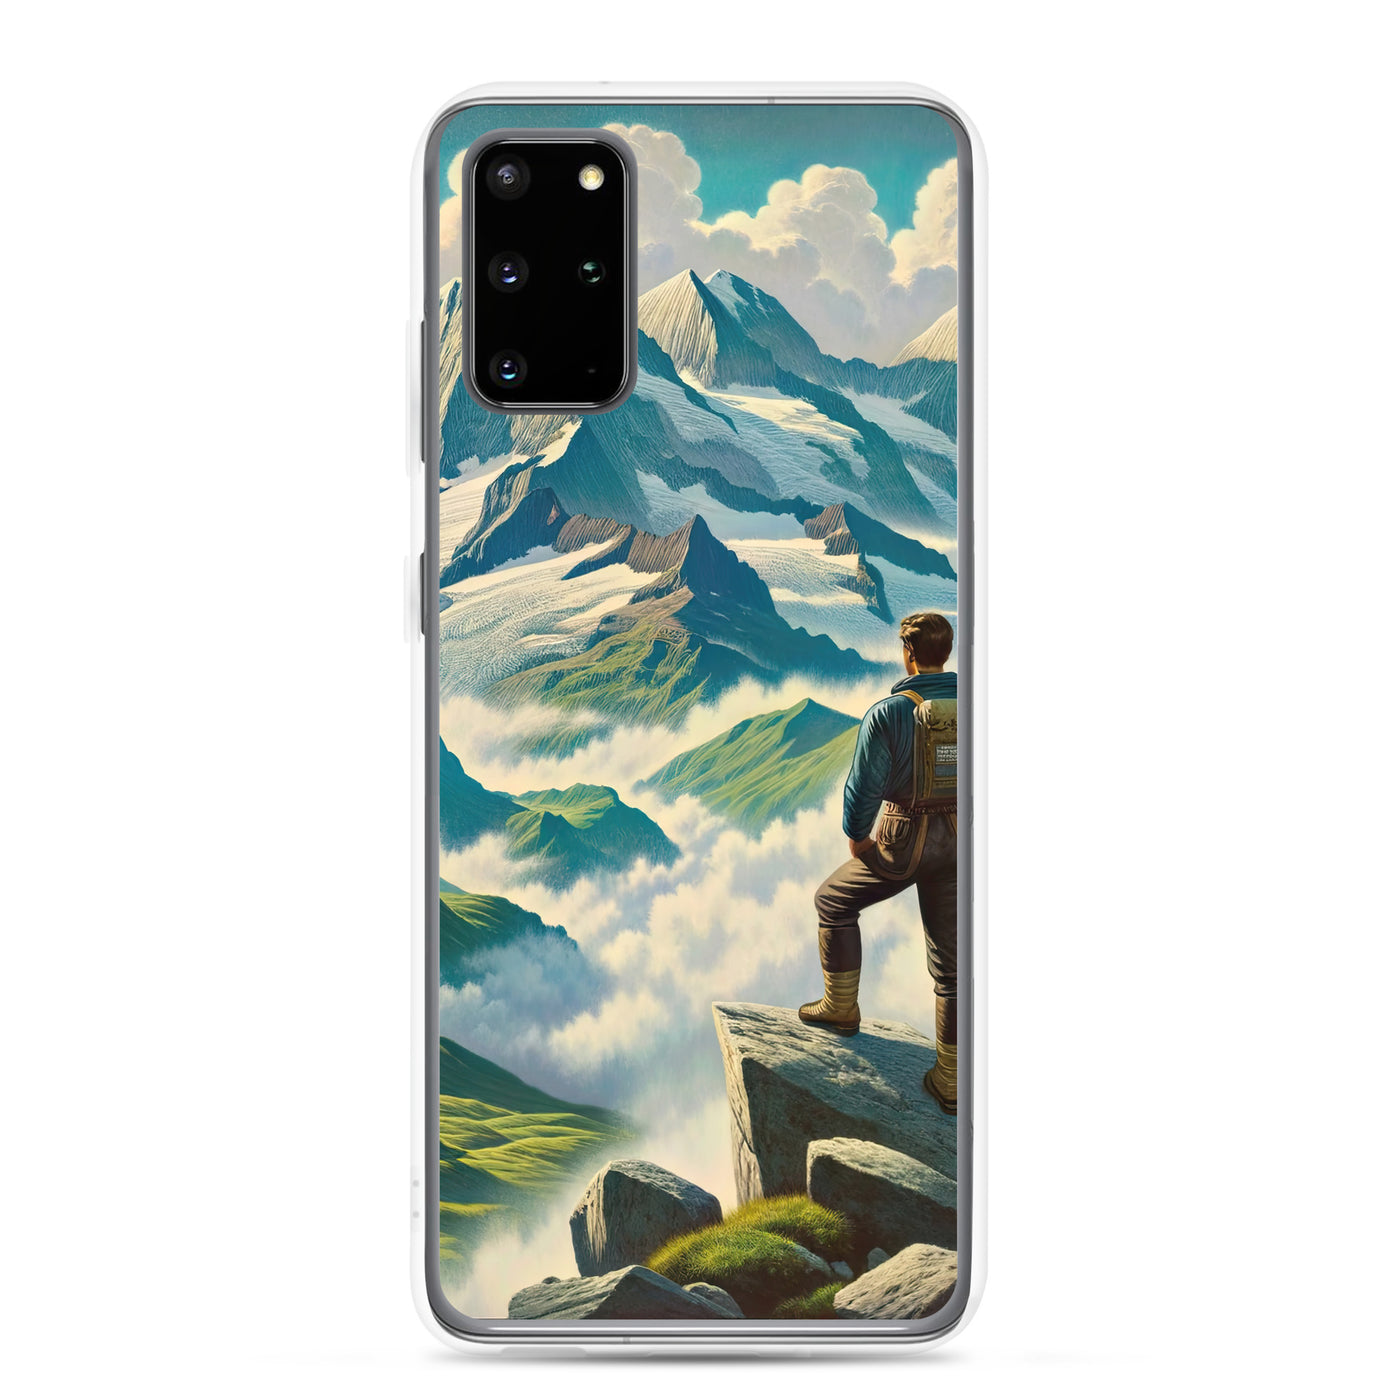 Panoramablick der Alpen mit Wanderer auf einem Hügel und schroffen Gipfeln - Samsung Schutzhülle (durchsichtig) wandern xxx yyy zzz Samsung Galaxy S20 Plus